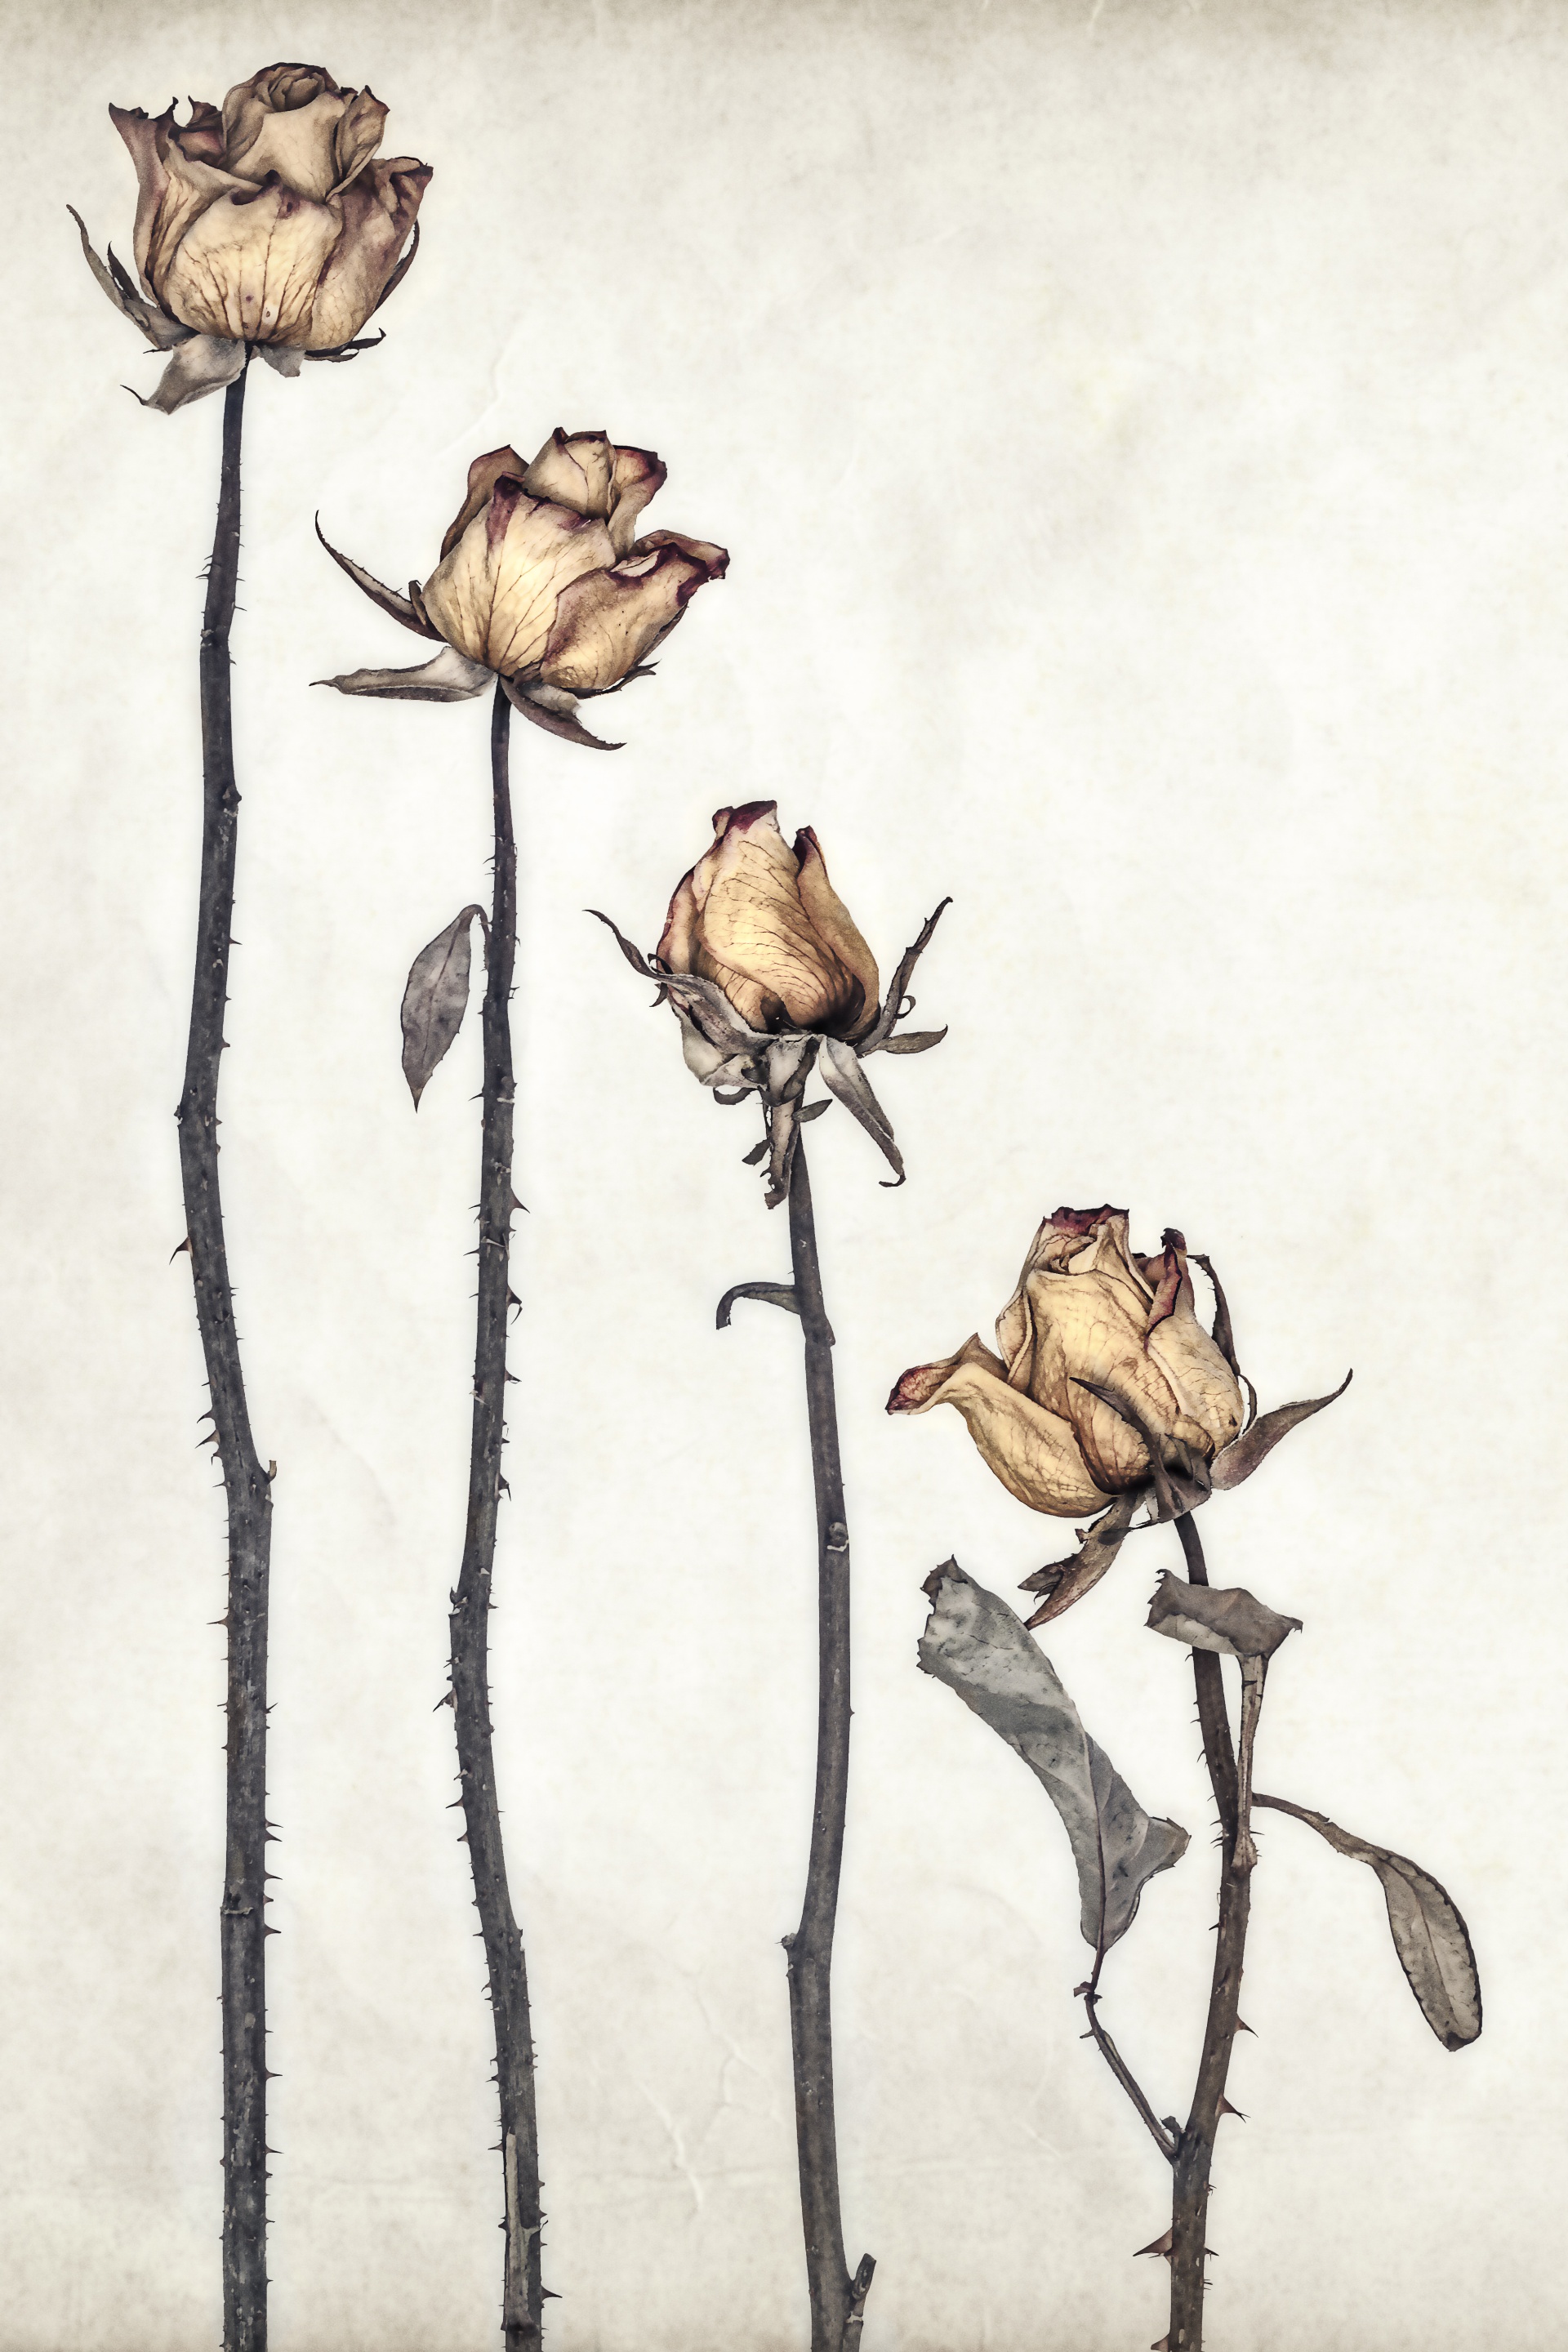 Roses, Stampa Fine Art 30x40 cm certificata Digigraphie su carta Hahnemühle Photo Rag di nature morte sul tema delle rose